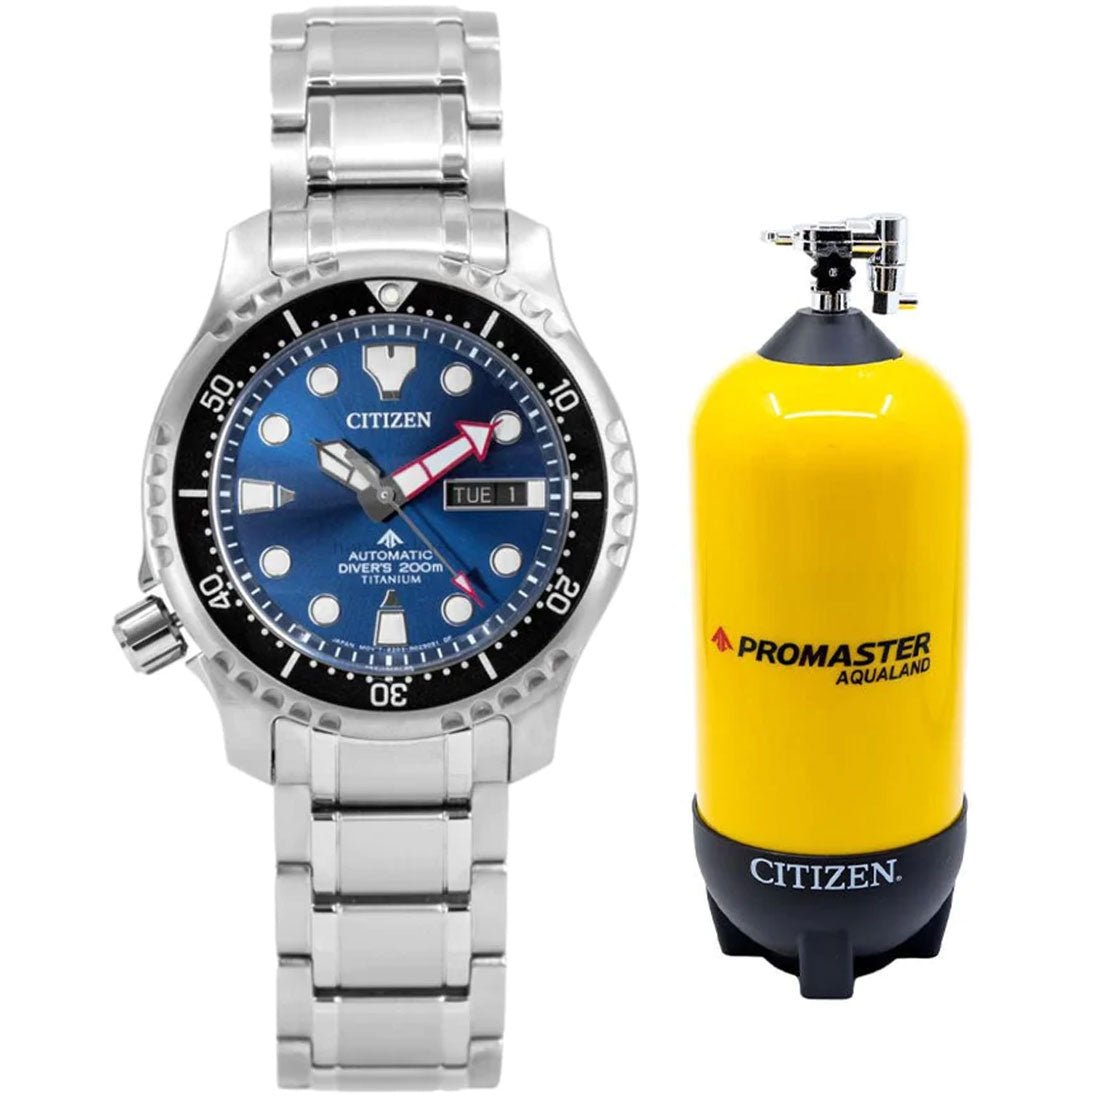 Citizen Promaster Aqualand Super Titanium NY0100-50M Blue Dial Dive Watch -Citizen